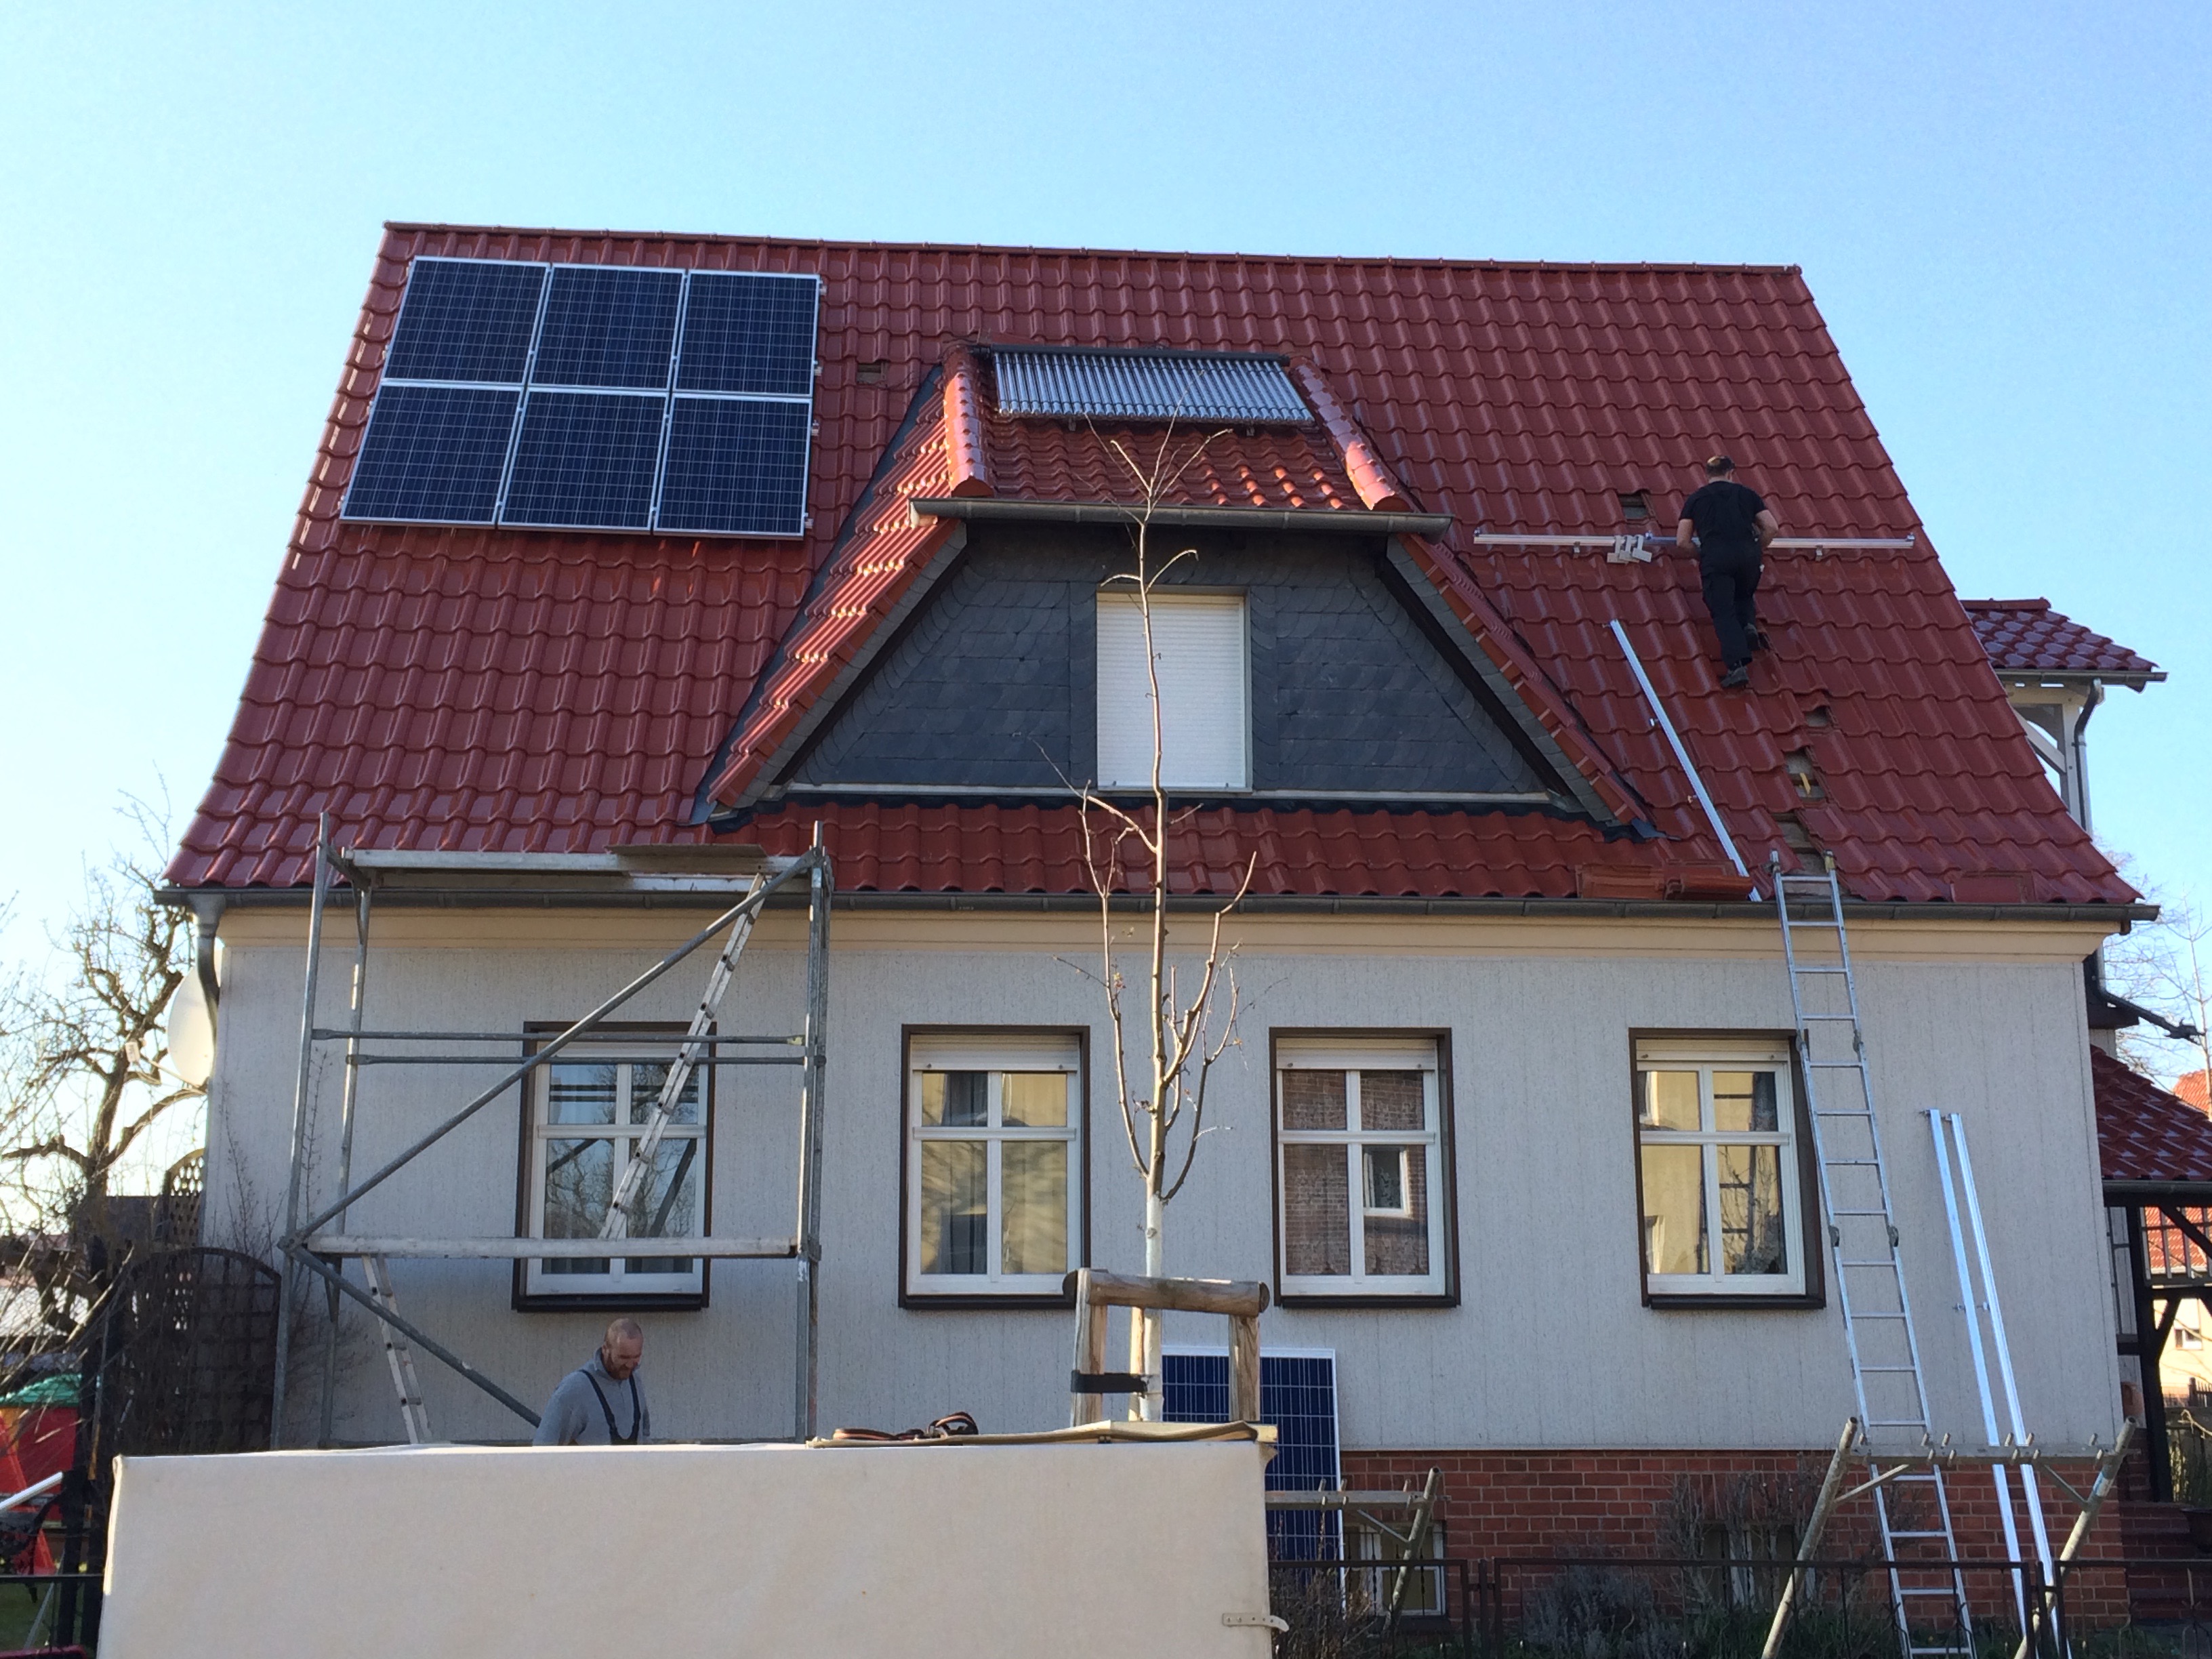 1A Solarwatt Photovoltaikanlage 2016